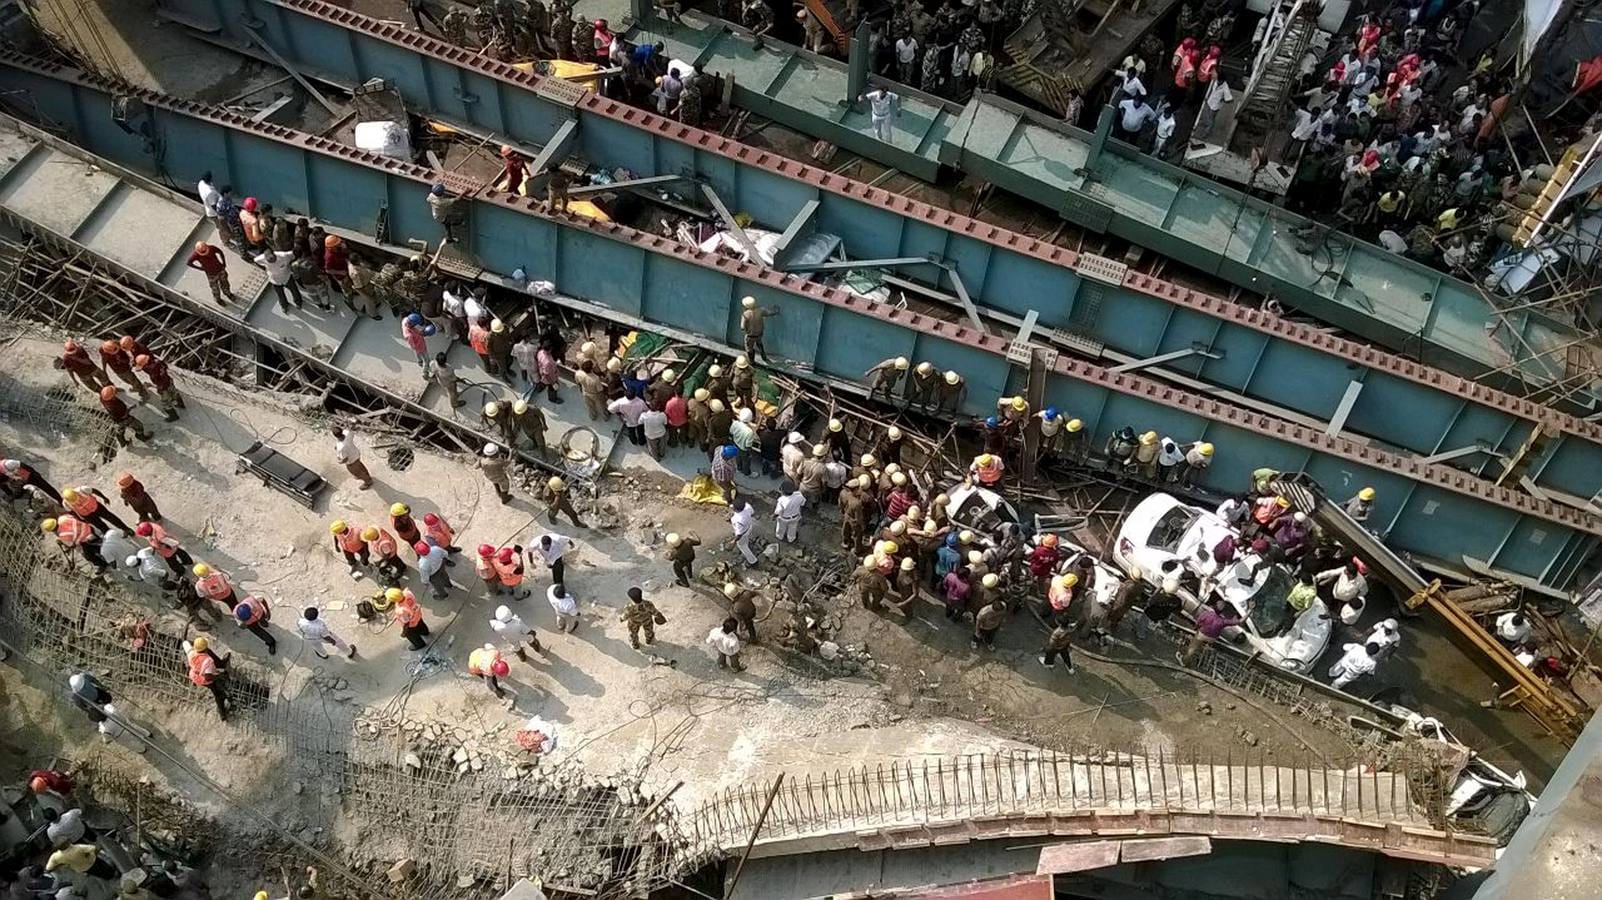 El pasado septiembre, dos trabajadores fueron rescatados tras permanecer nueve días atrapados en un túnel que se derrumbó a unos 47 metros de profundidad en el estado norteño de Himachal Pradesh